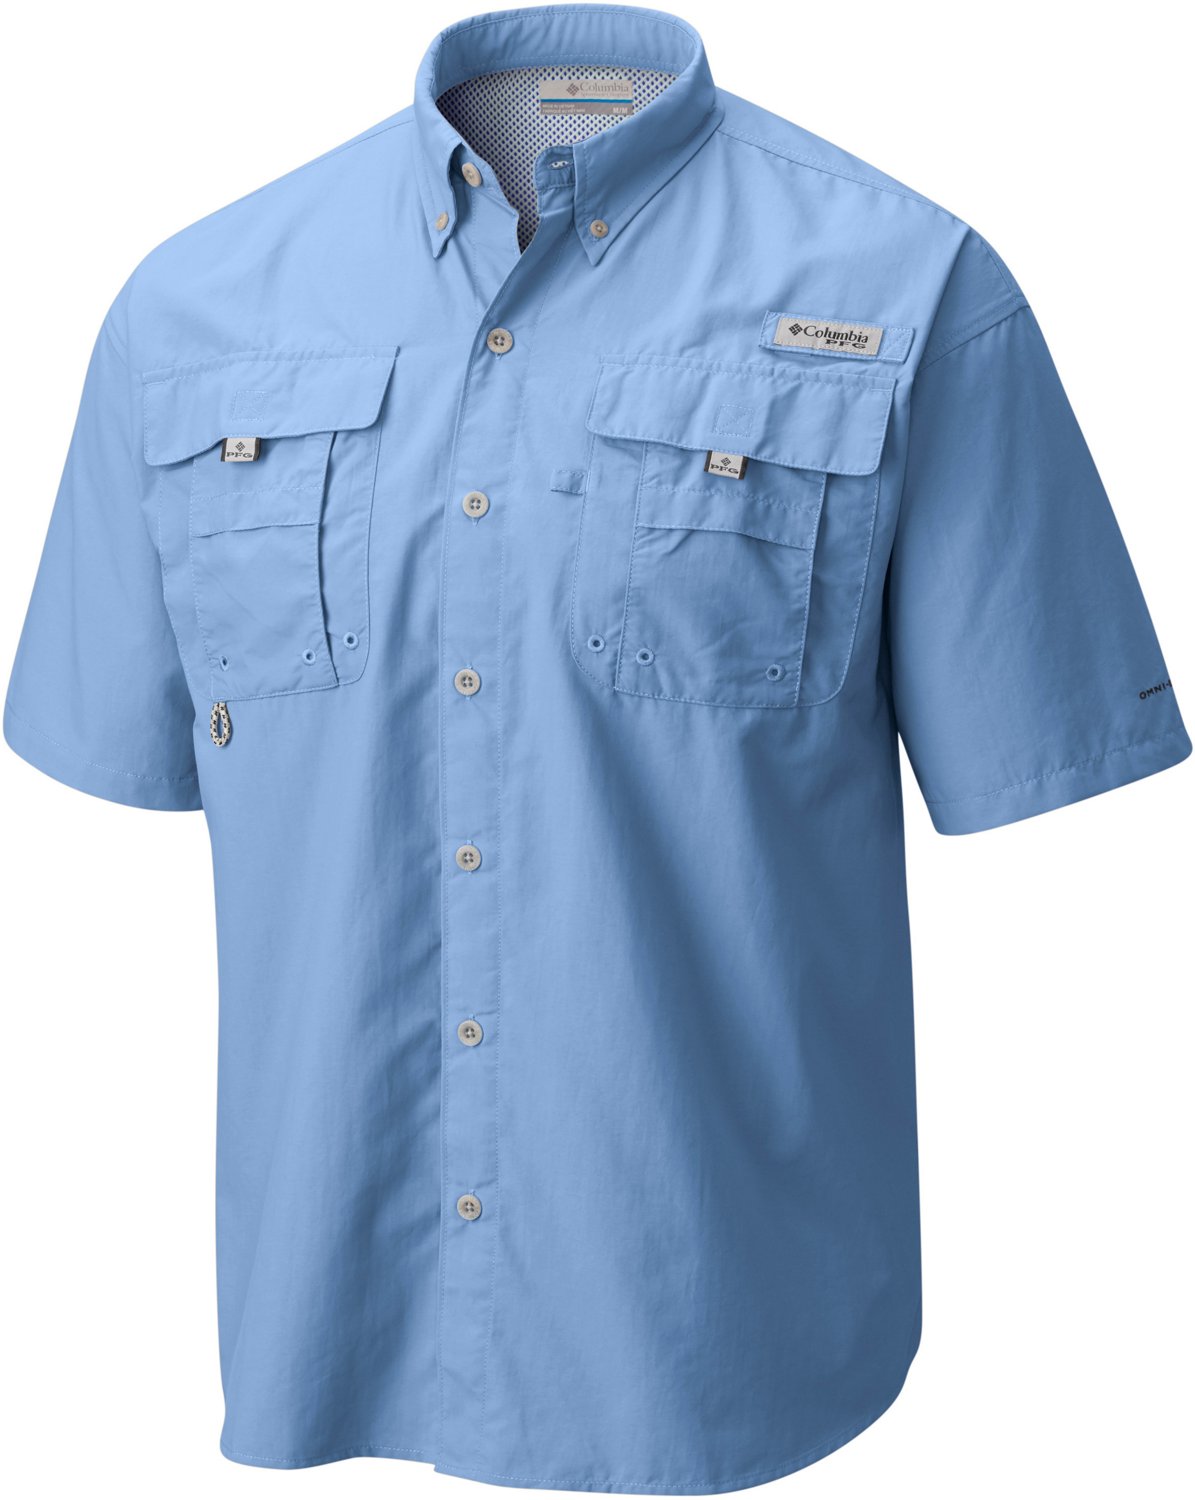 Columbia Sportswear Men's PFG Bahama II Tall Short Sleeve Shirt | Academy